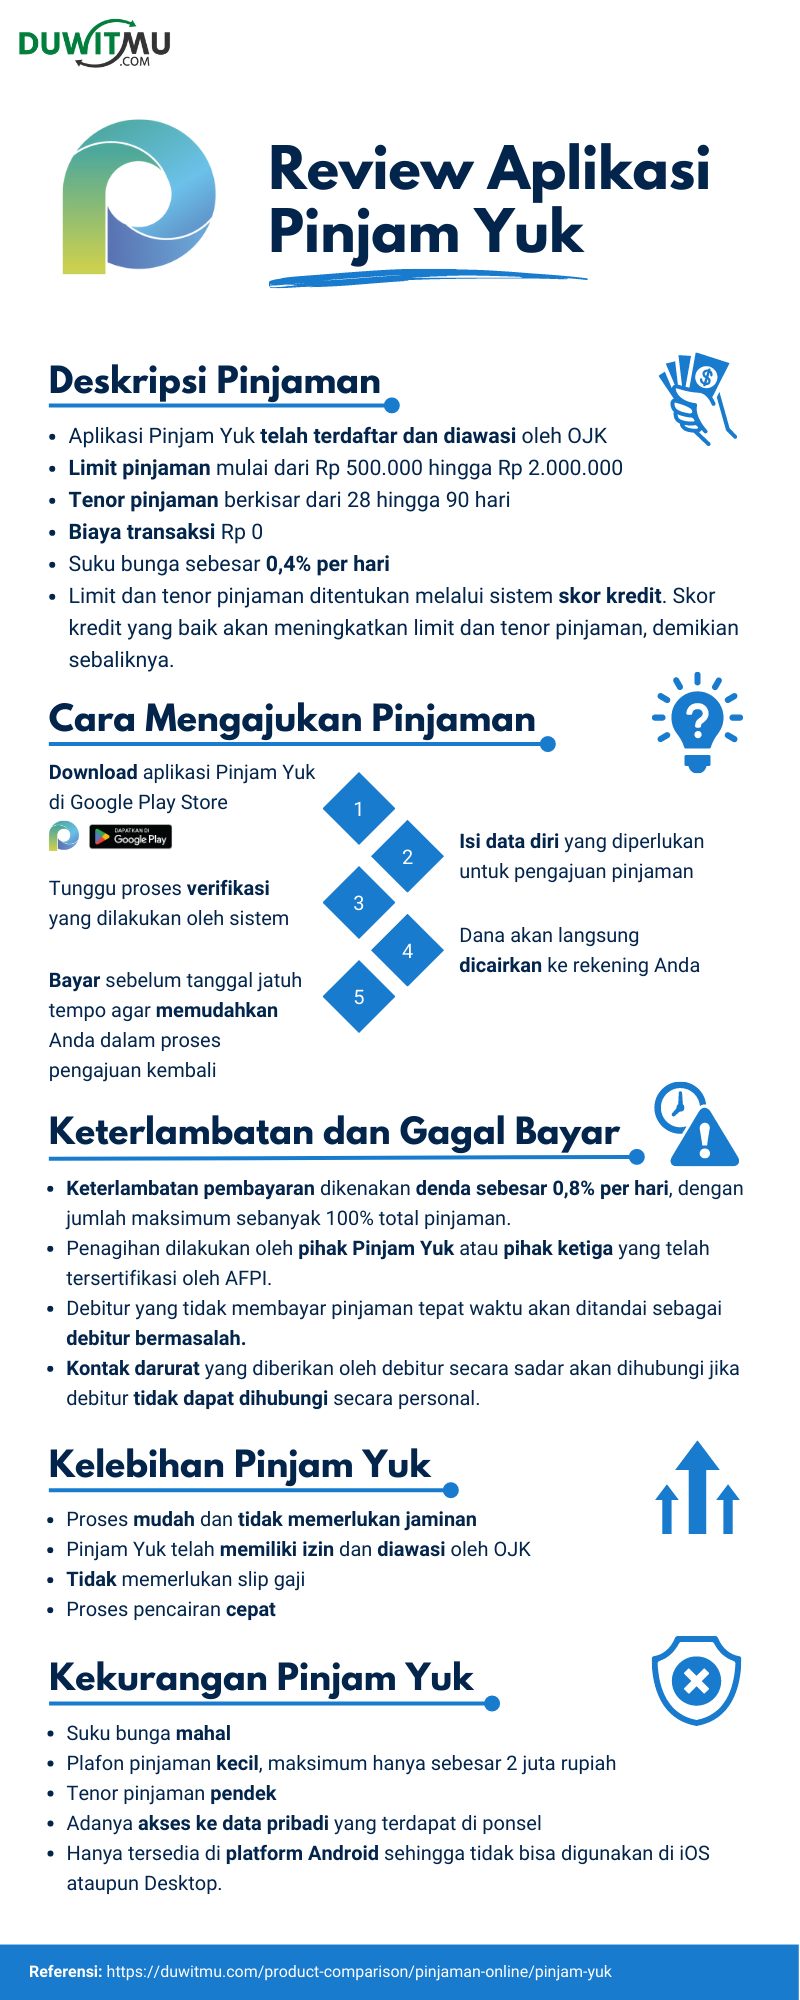 Review Pinjam Yuk Pinjaman Online